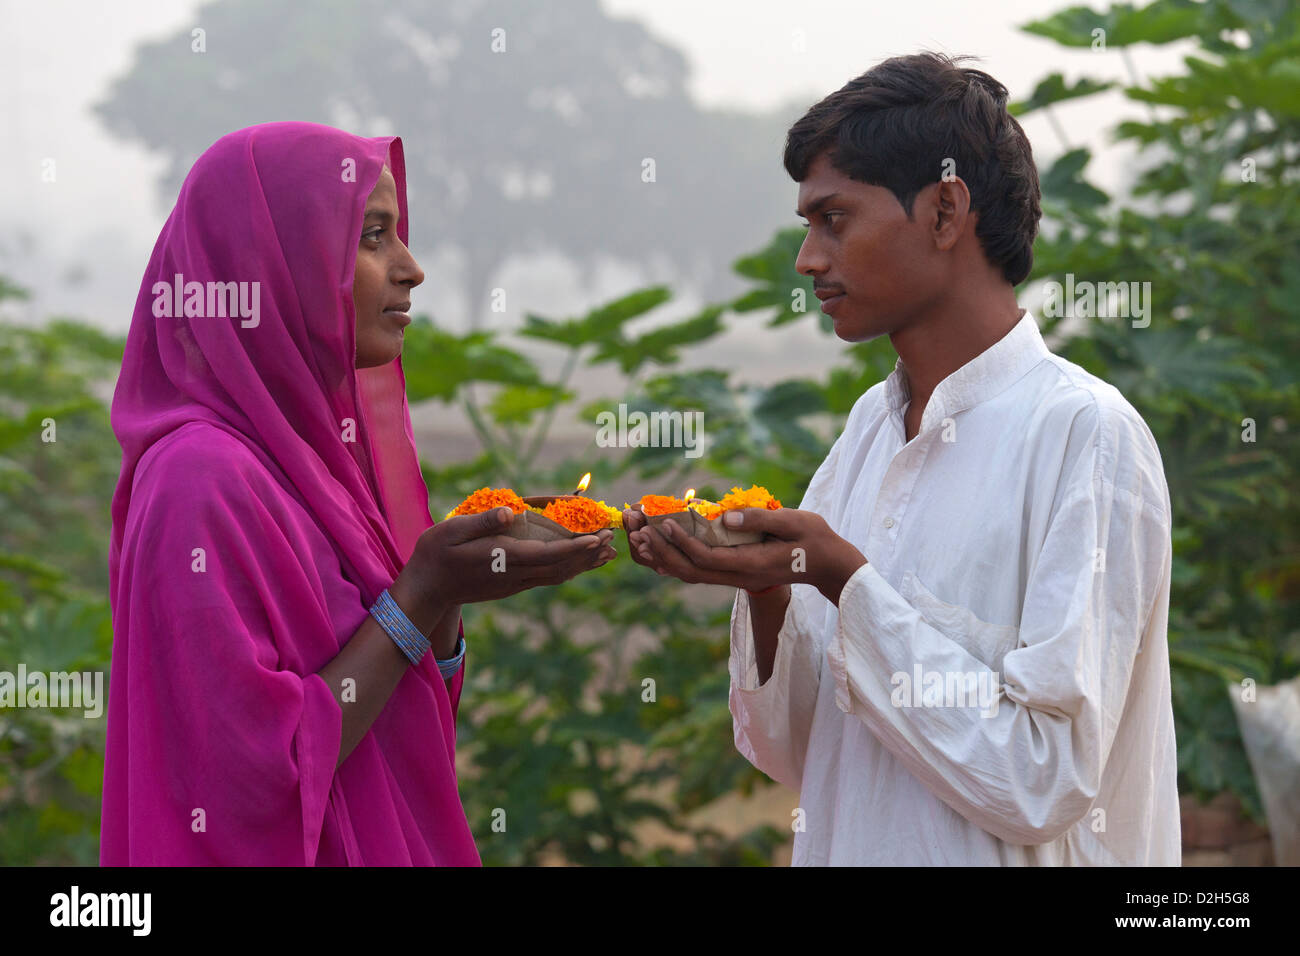 La India, Uttar Pradesh, joven hombre y mujer hindú la celebración de la oración luz y caléndulas Foto de stock